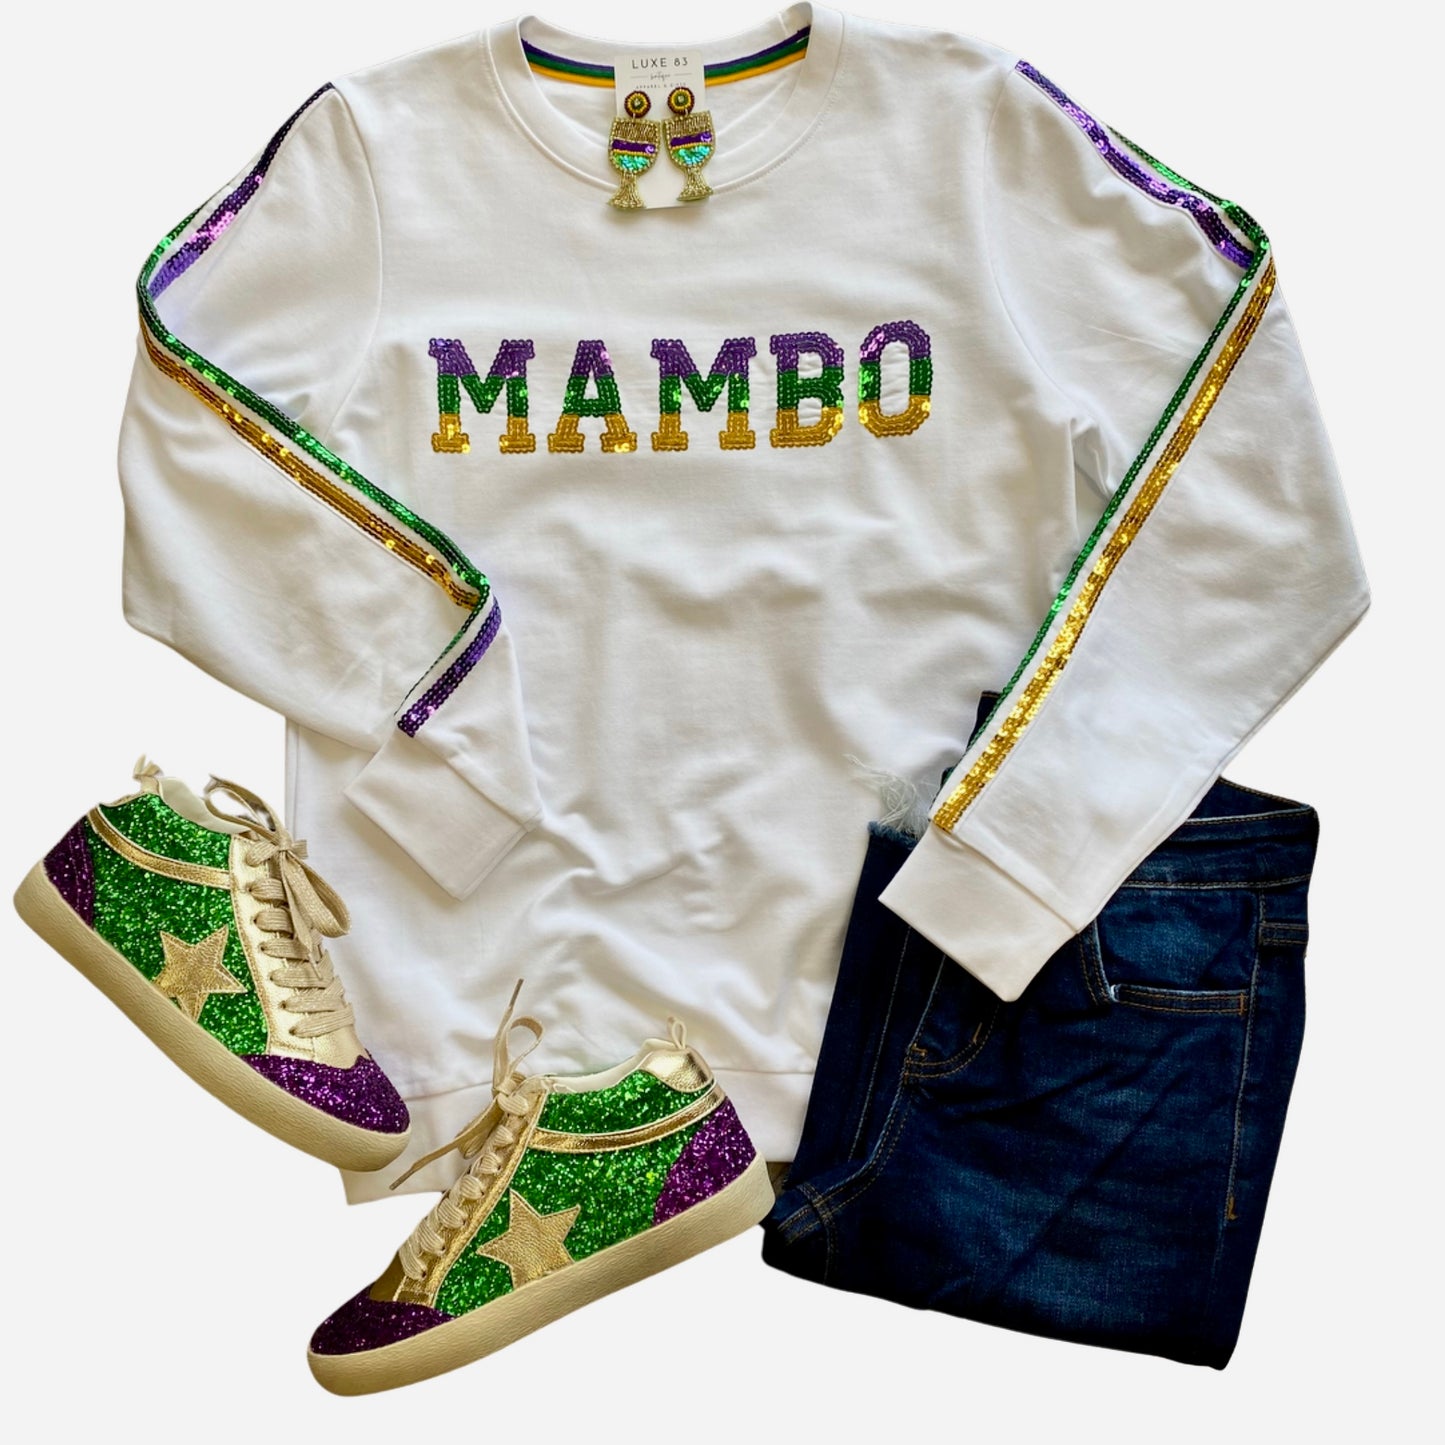 MAMBO Sequin Shirt